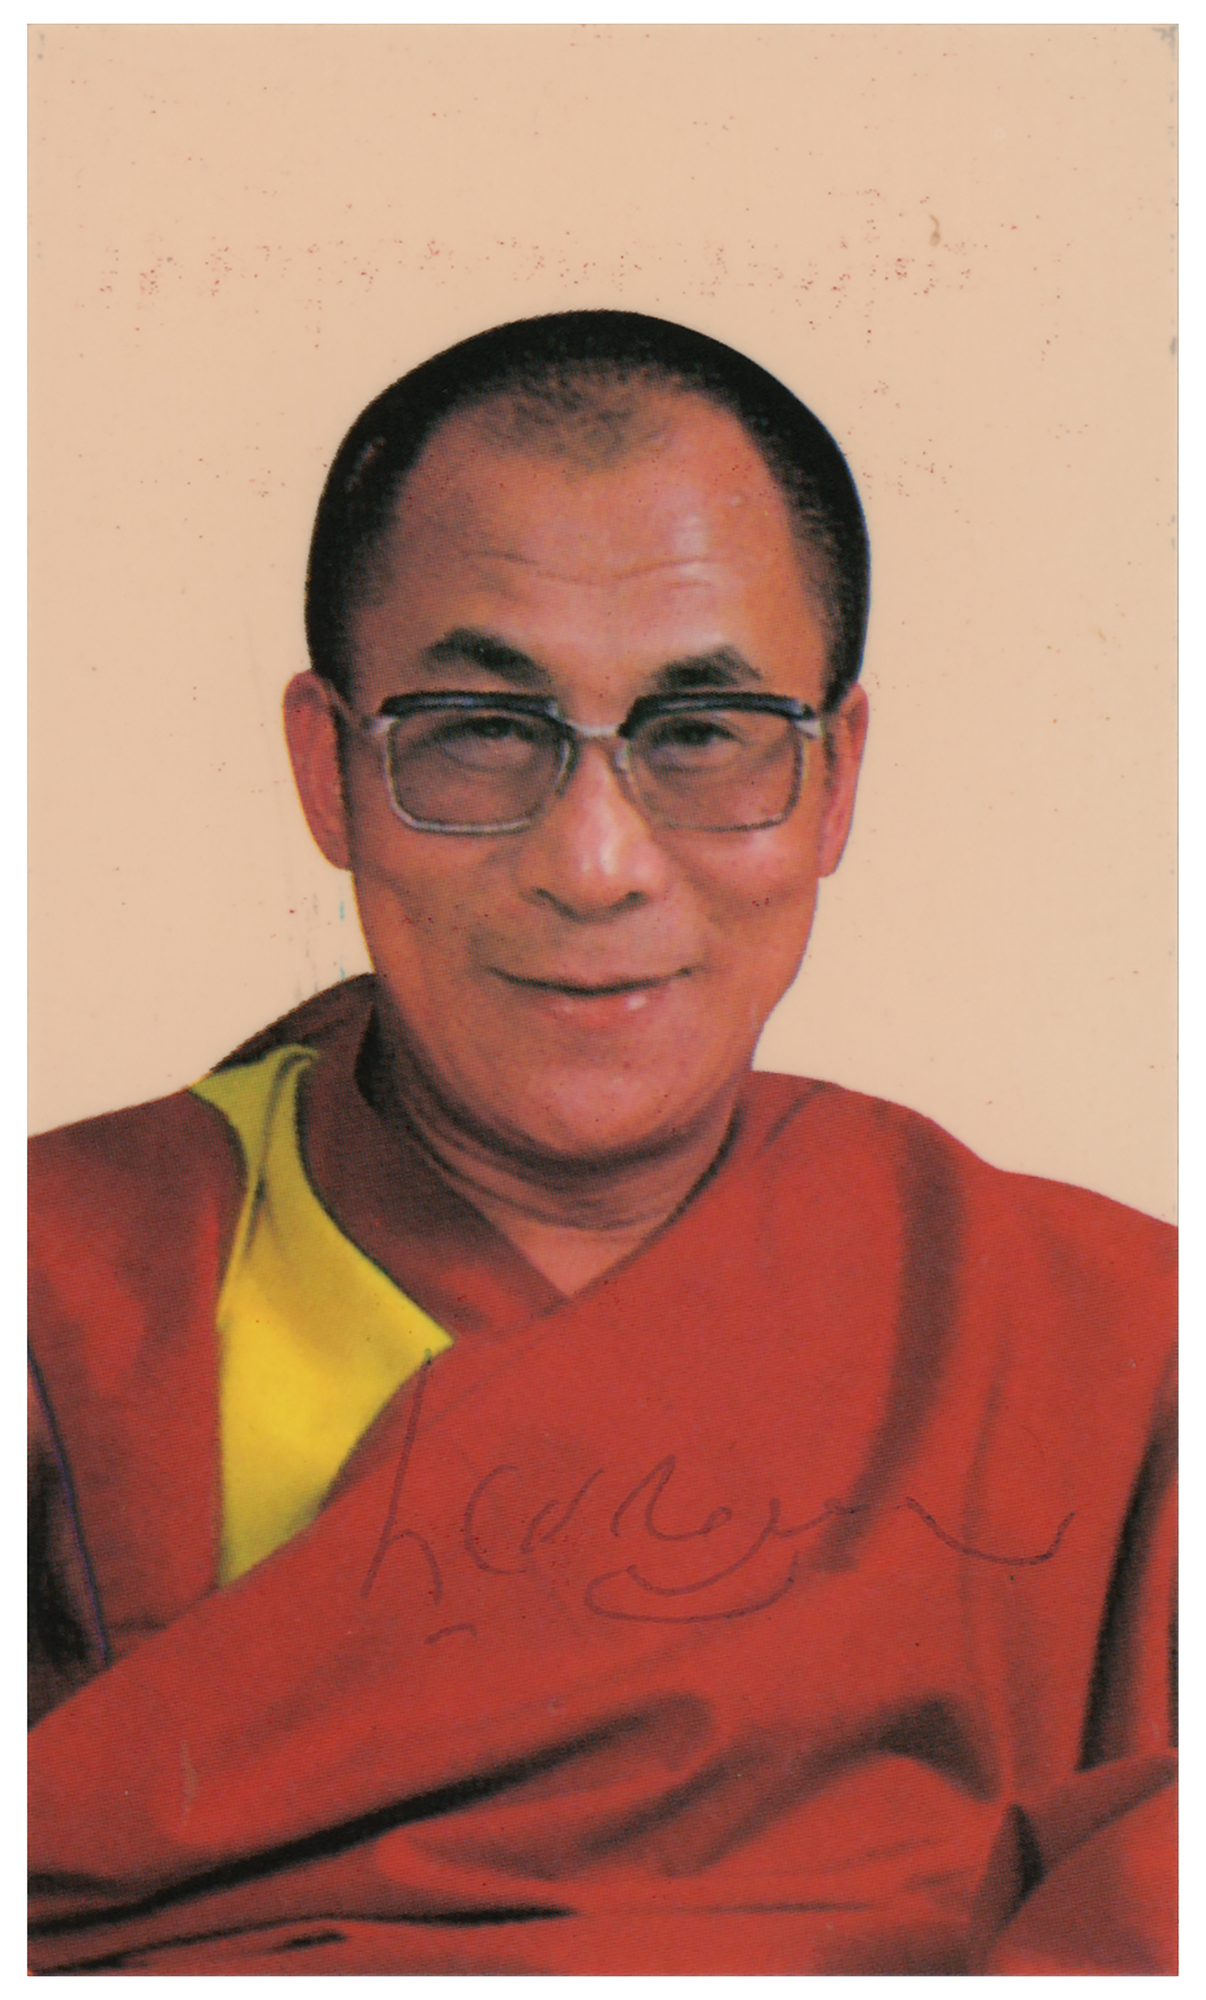 Lot #230 Dalai Lama Signed Prayer Card